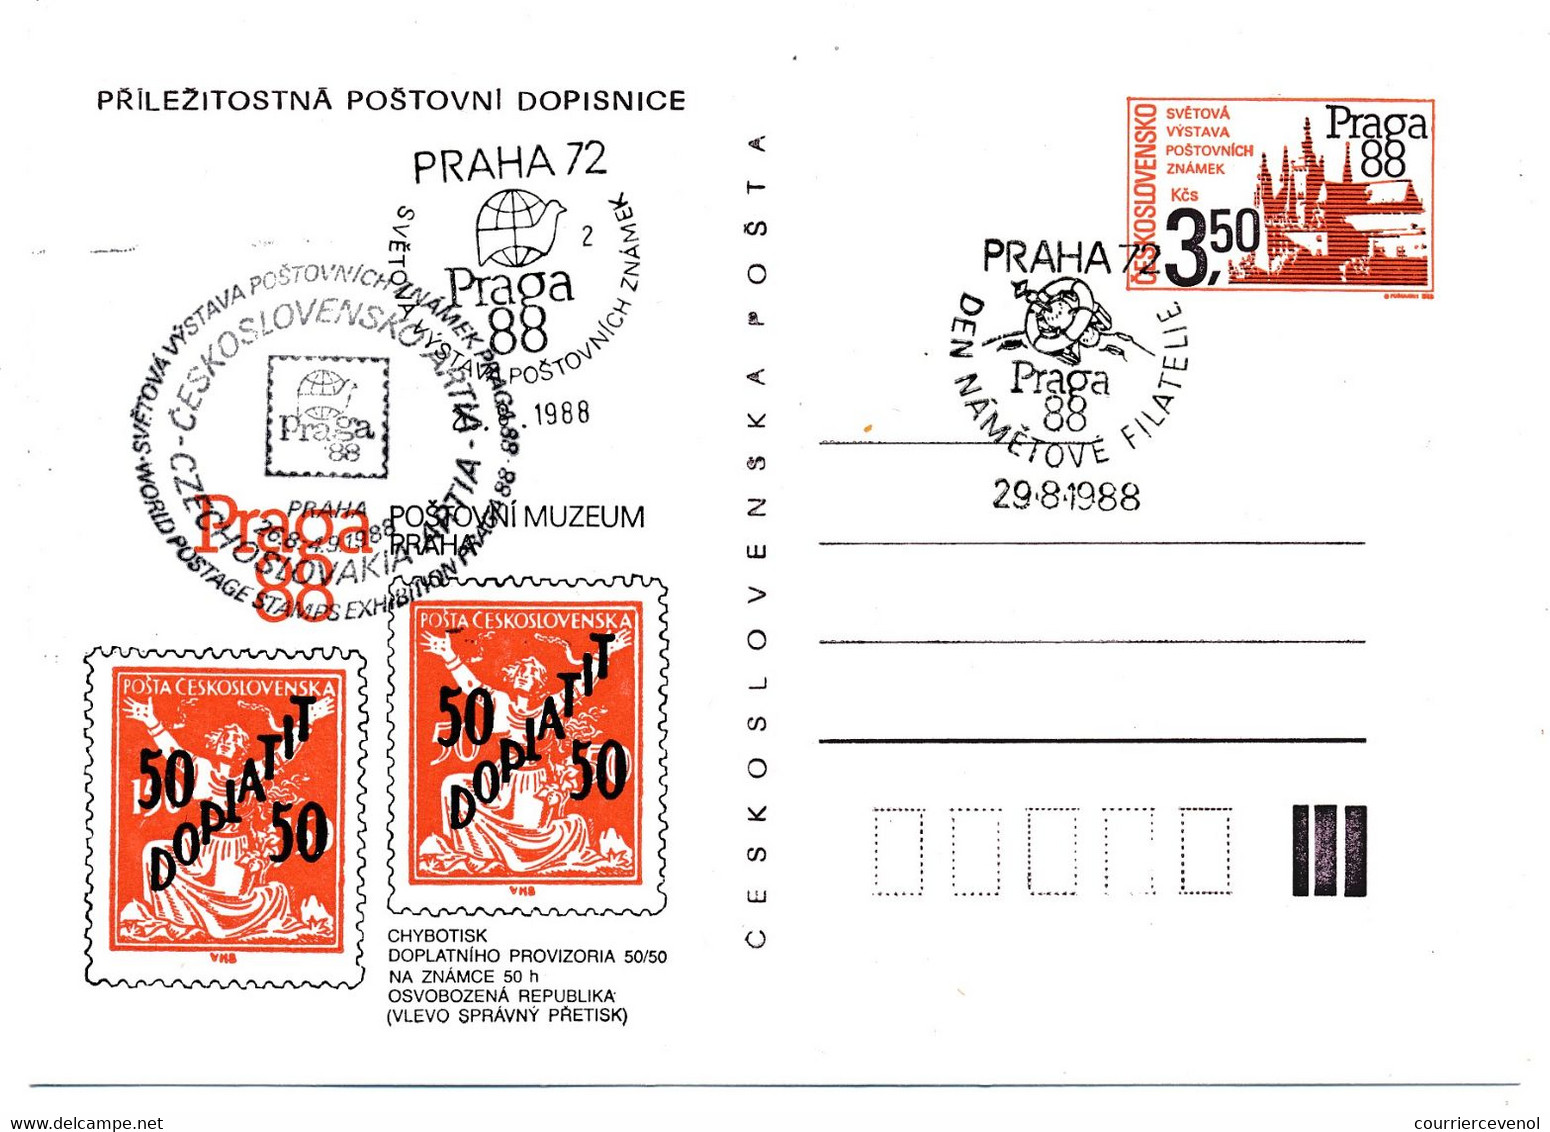 TCHECOSLOVAQUIE - Ensemble de 12 cartes postales (11 Entiers + 1 CPM) au thème "PRAGA 88" - Tous Oblitérations Spéciales